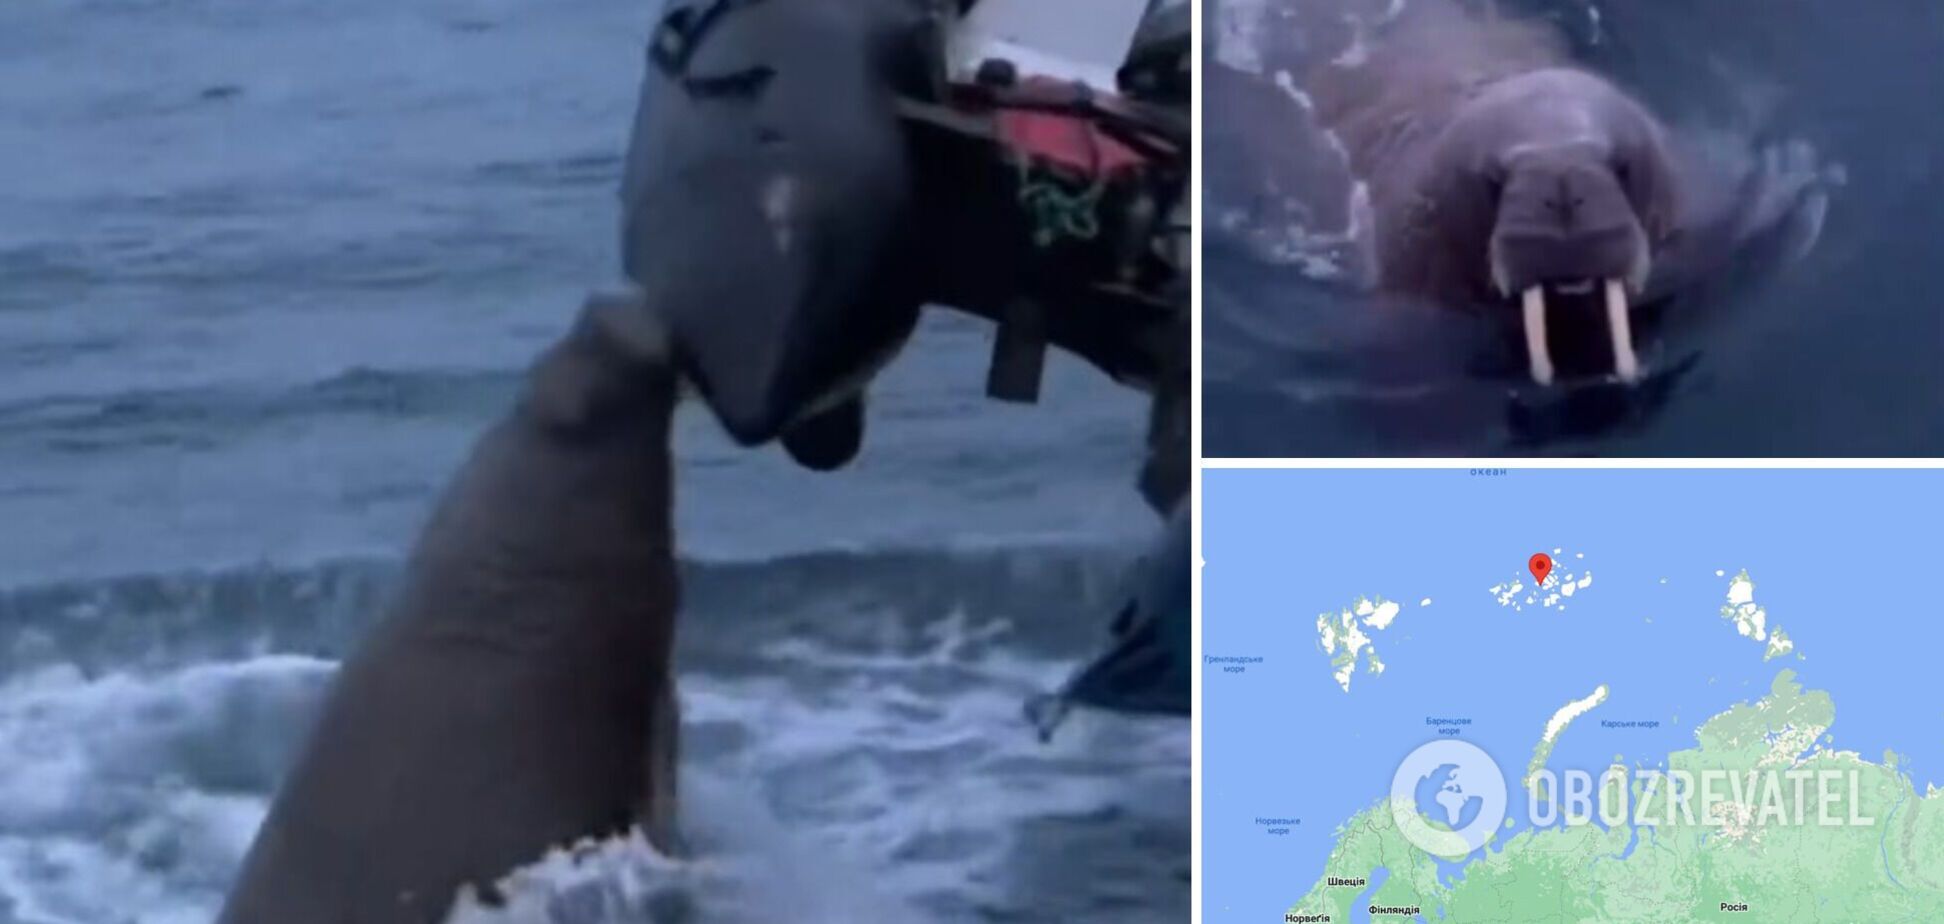 'Защищала свою территорию': моржиха напал на лодку россиян в Северном Ледовитом океане. Видео